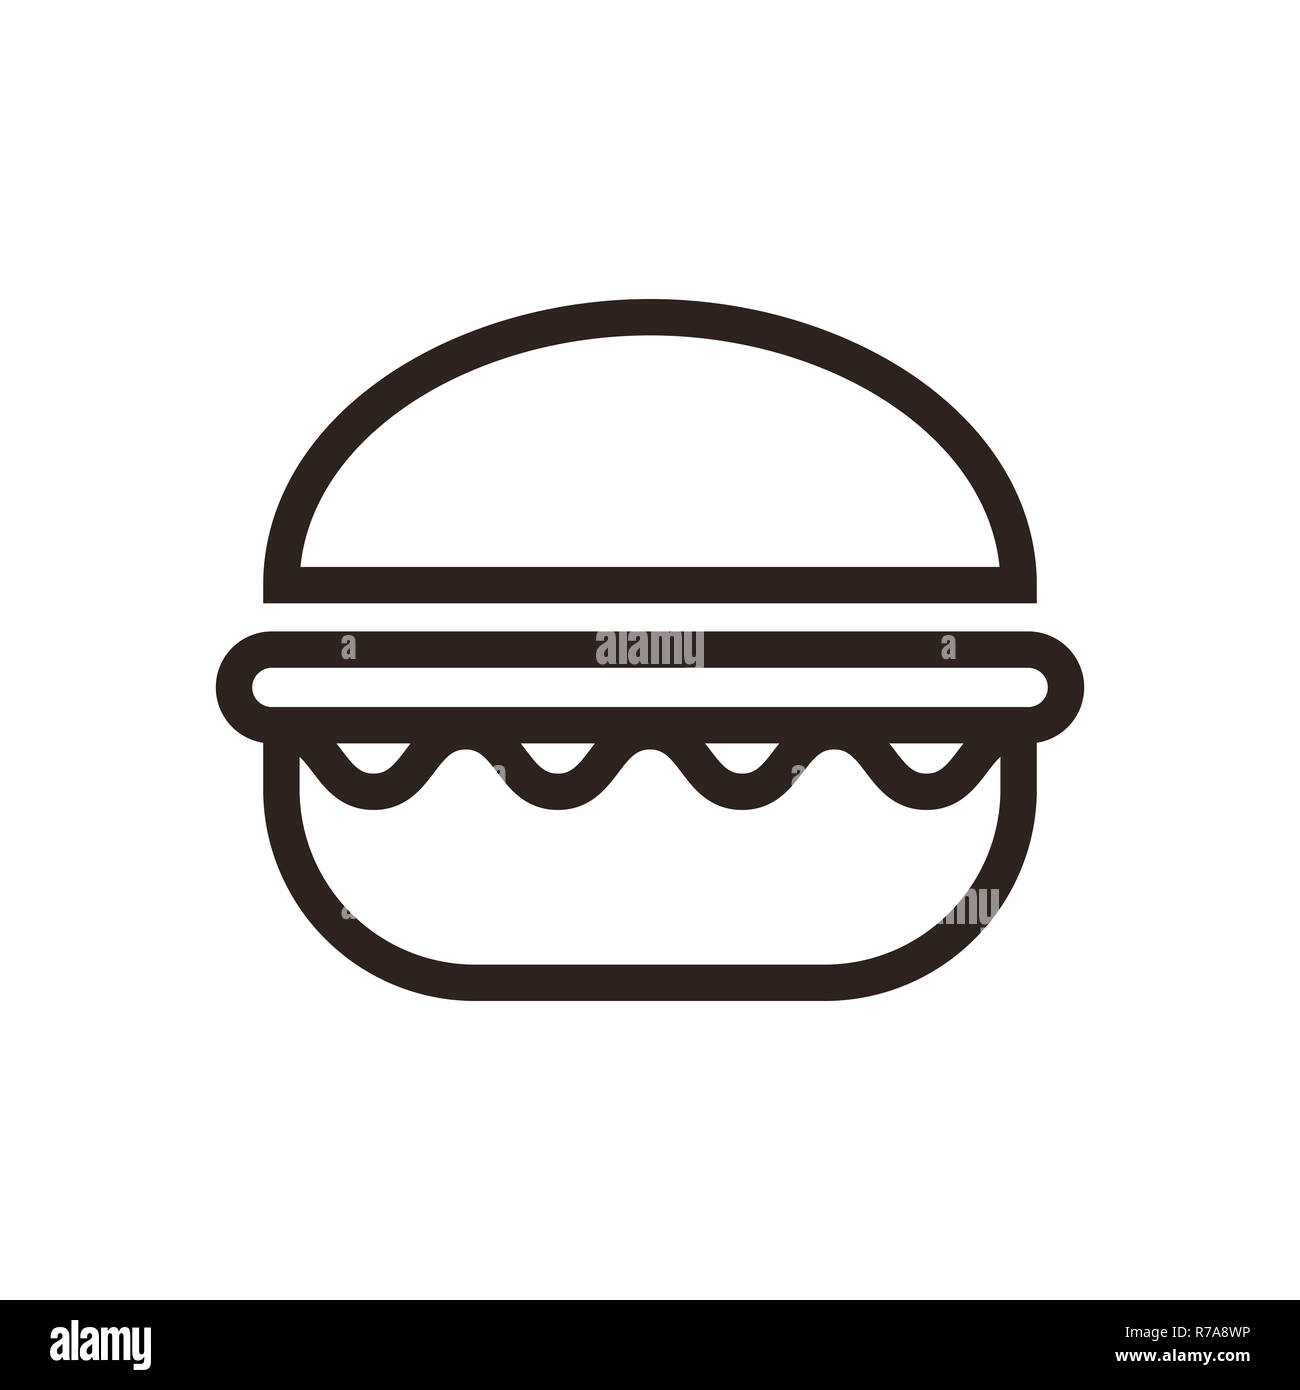 Hamburger icon  isolated on white background Stock Photo